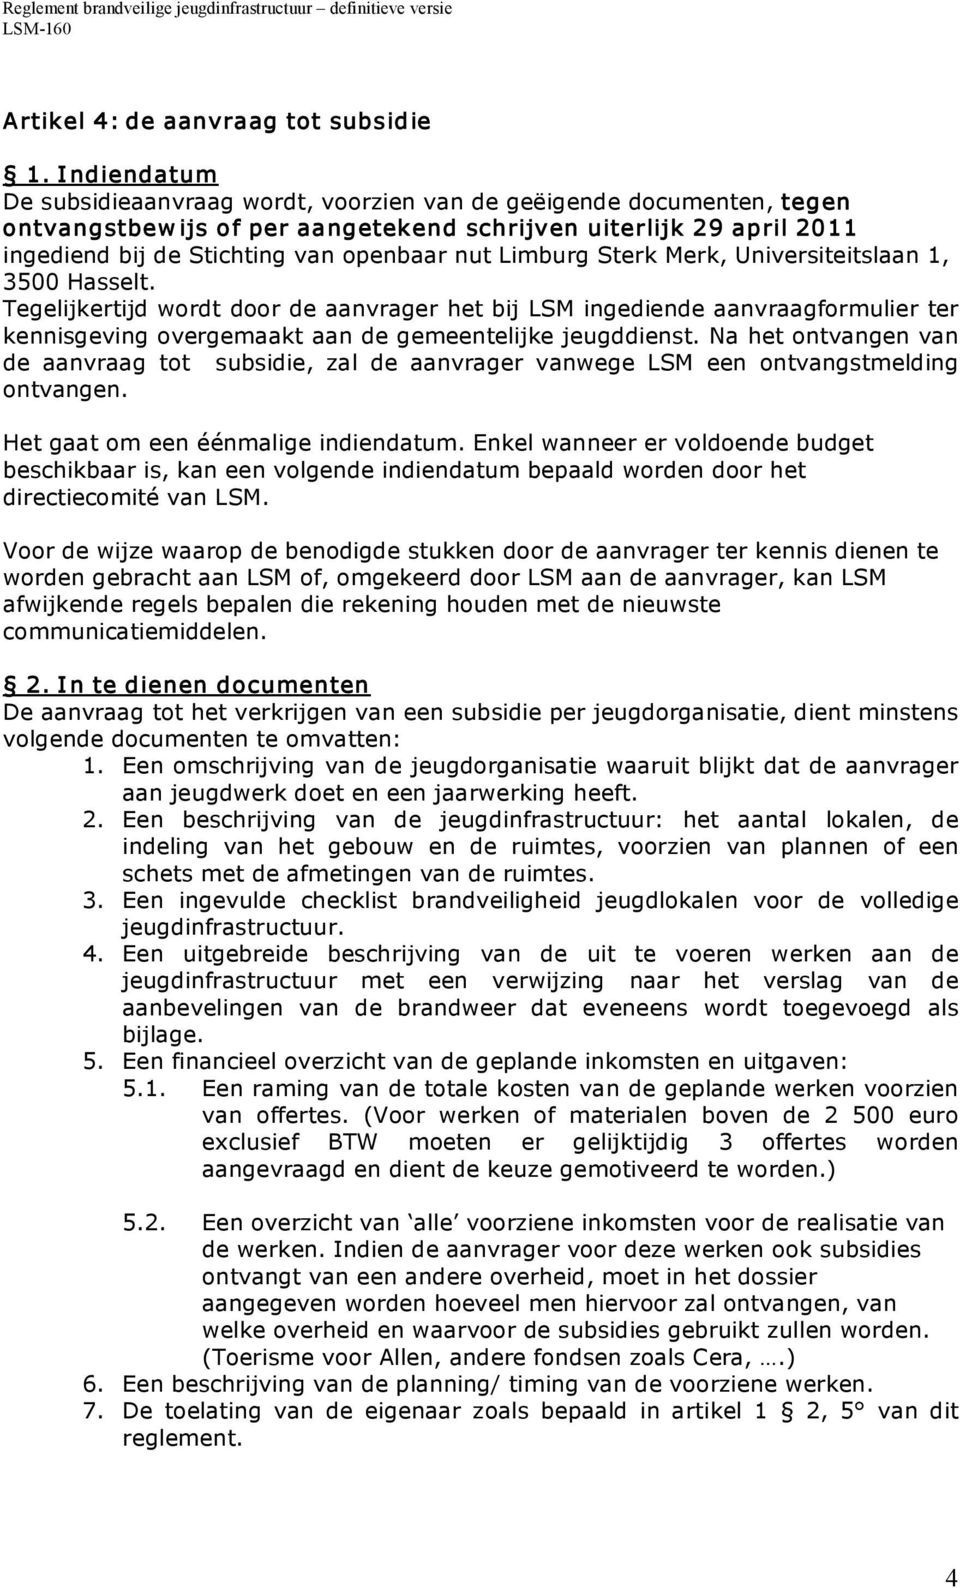 Limburg Sterk Merk, Universiteitslaan 1, 3500 Hasselt. Tegelijkertijd wordt door de aanvrager het bij LSM ingediende aanvraagformulier ter kennisgeving overgemaakt aan de gemeentelijke jeugddienst.